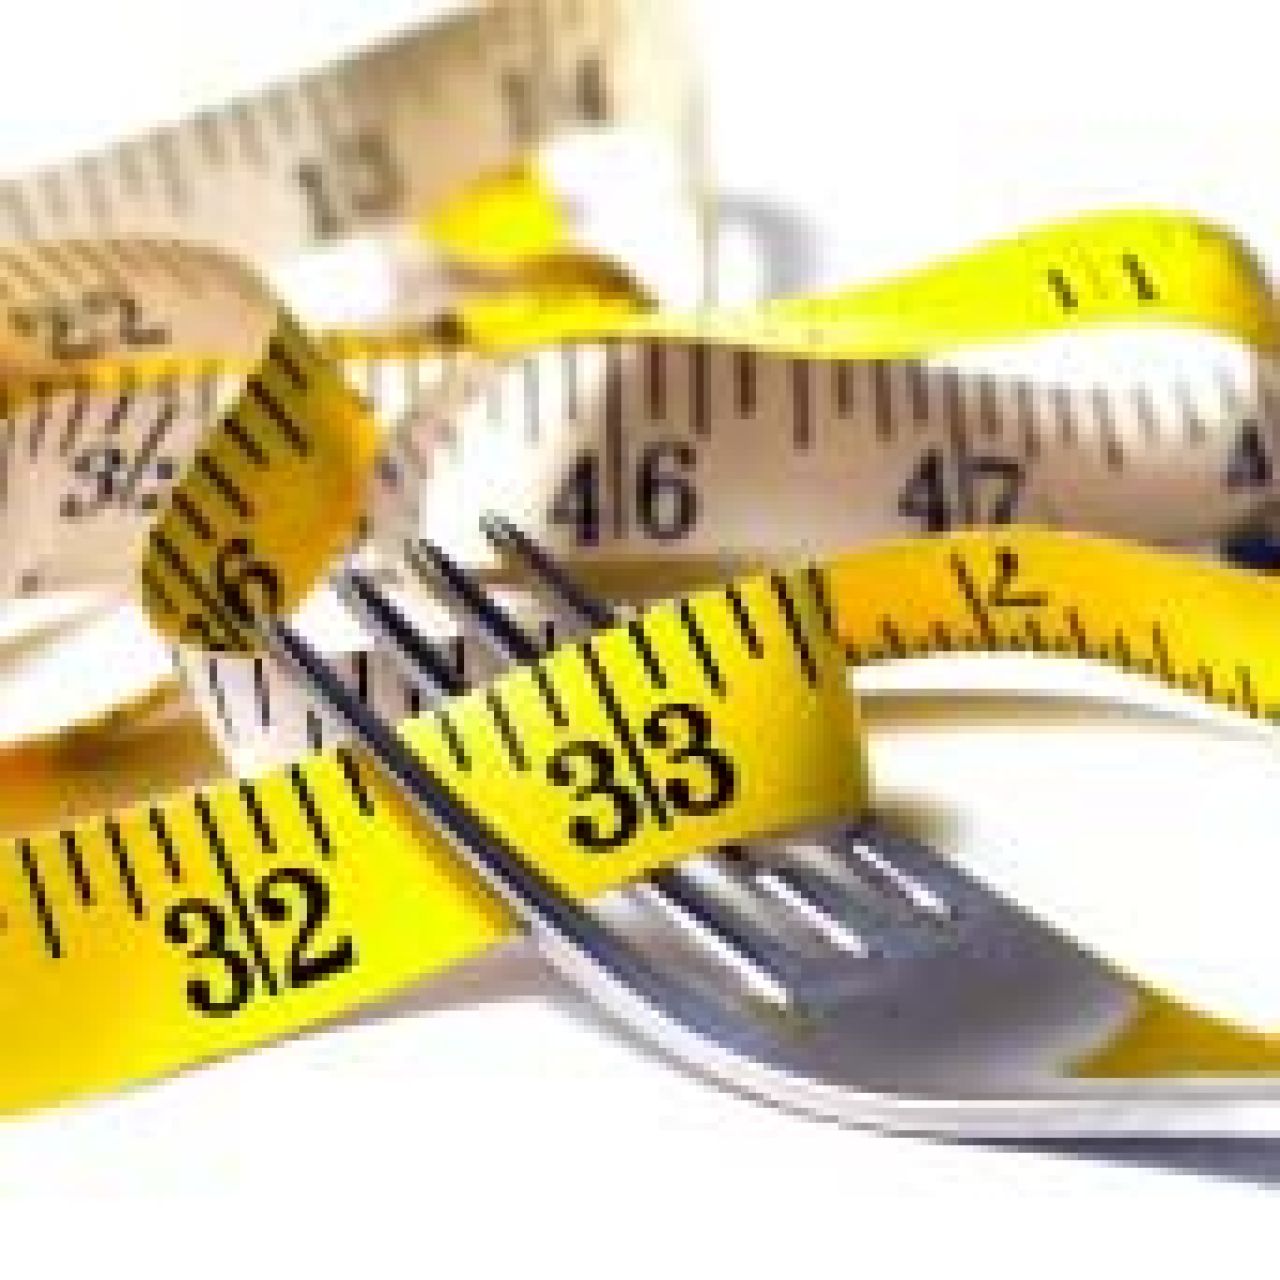 Zrzucenie wagi może poprawić naszą odporność